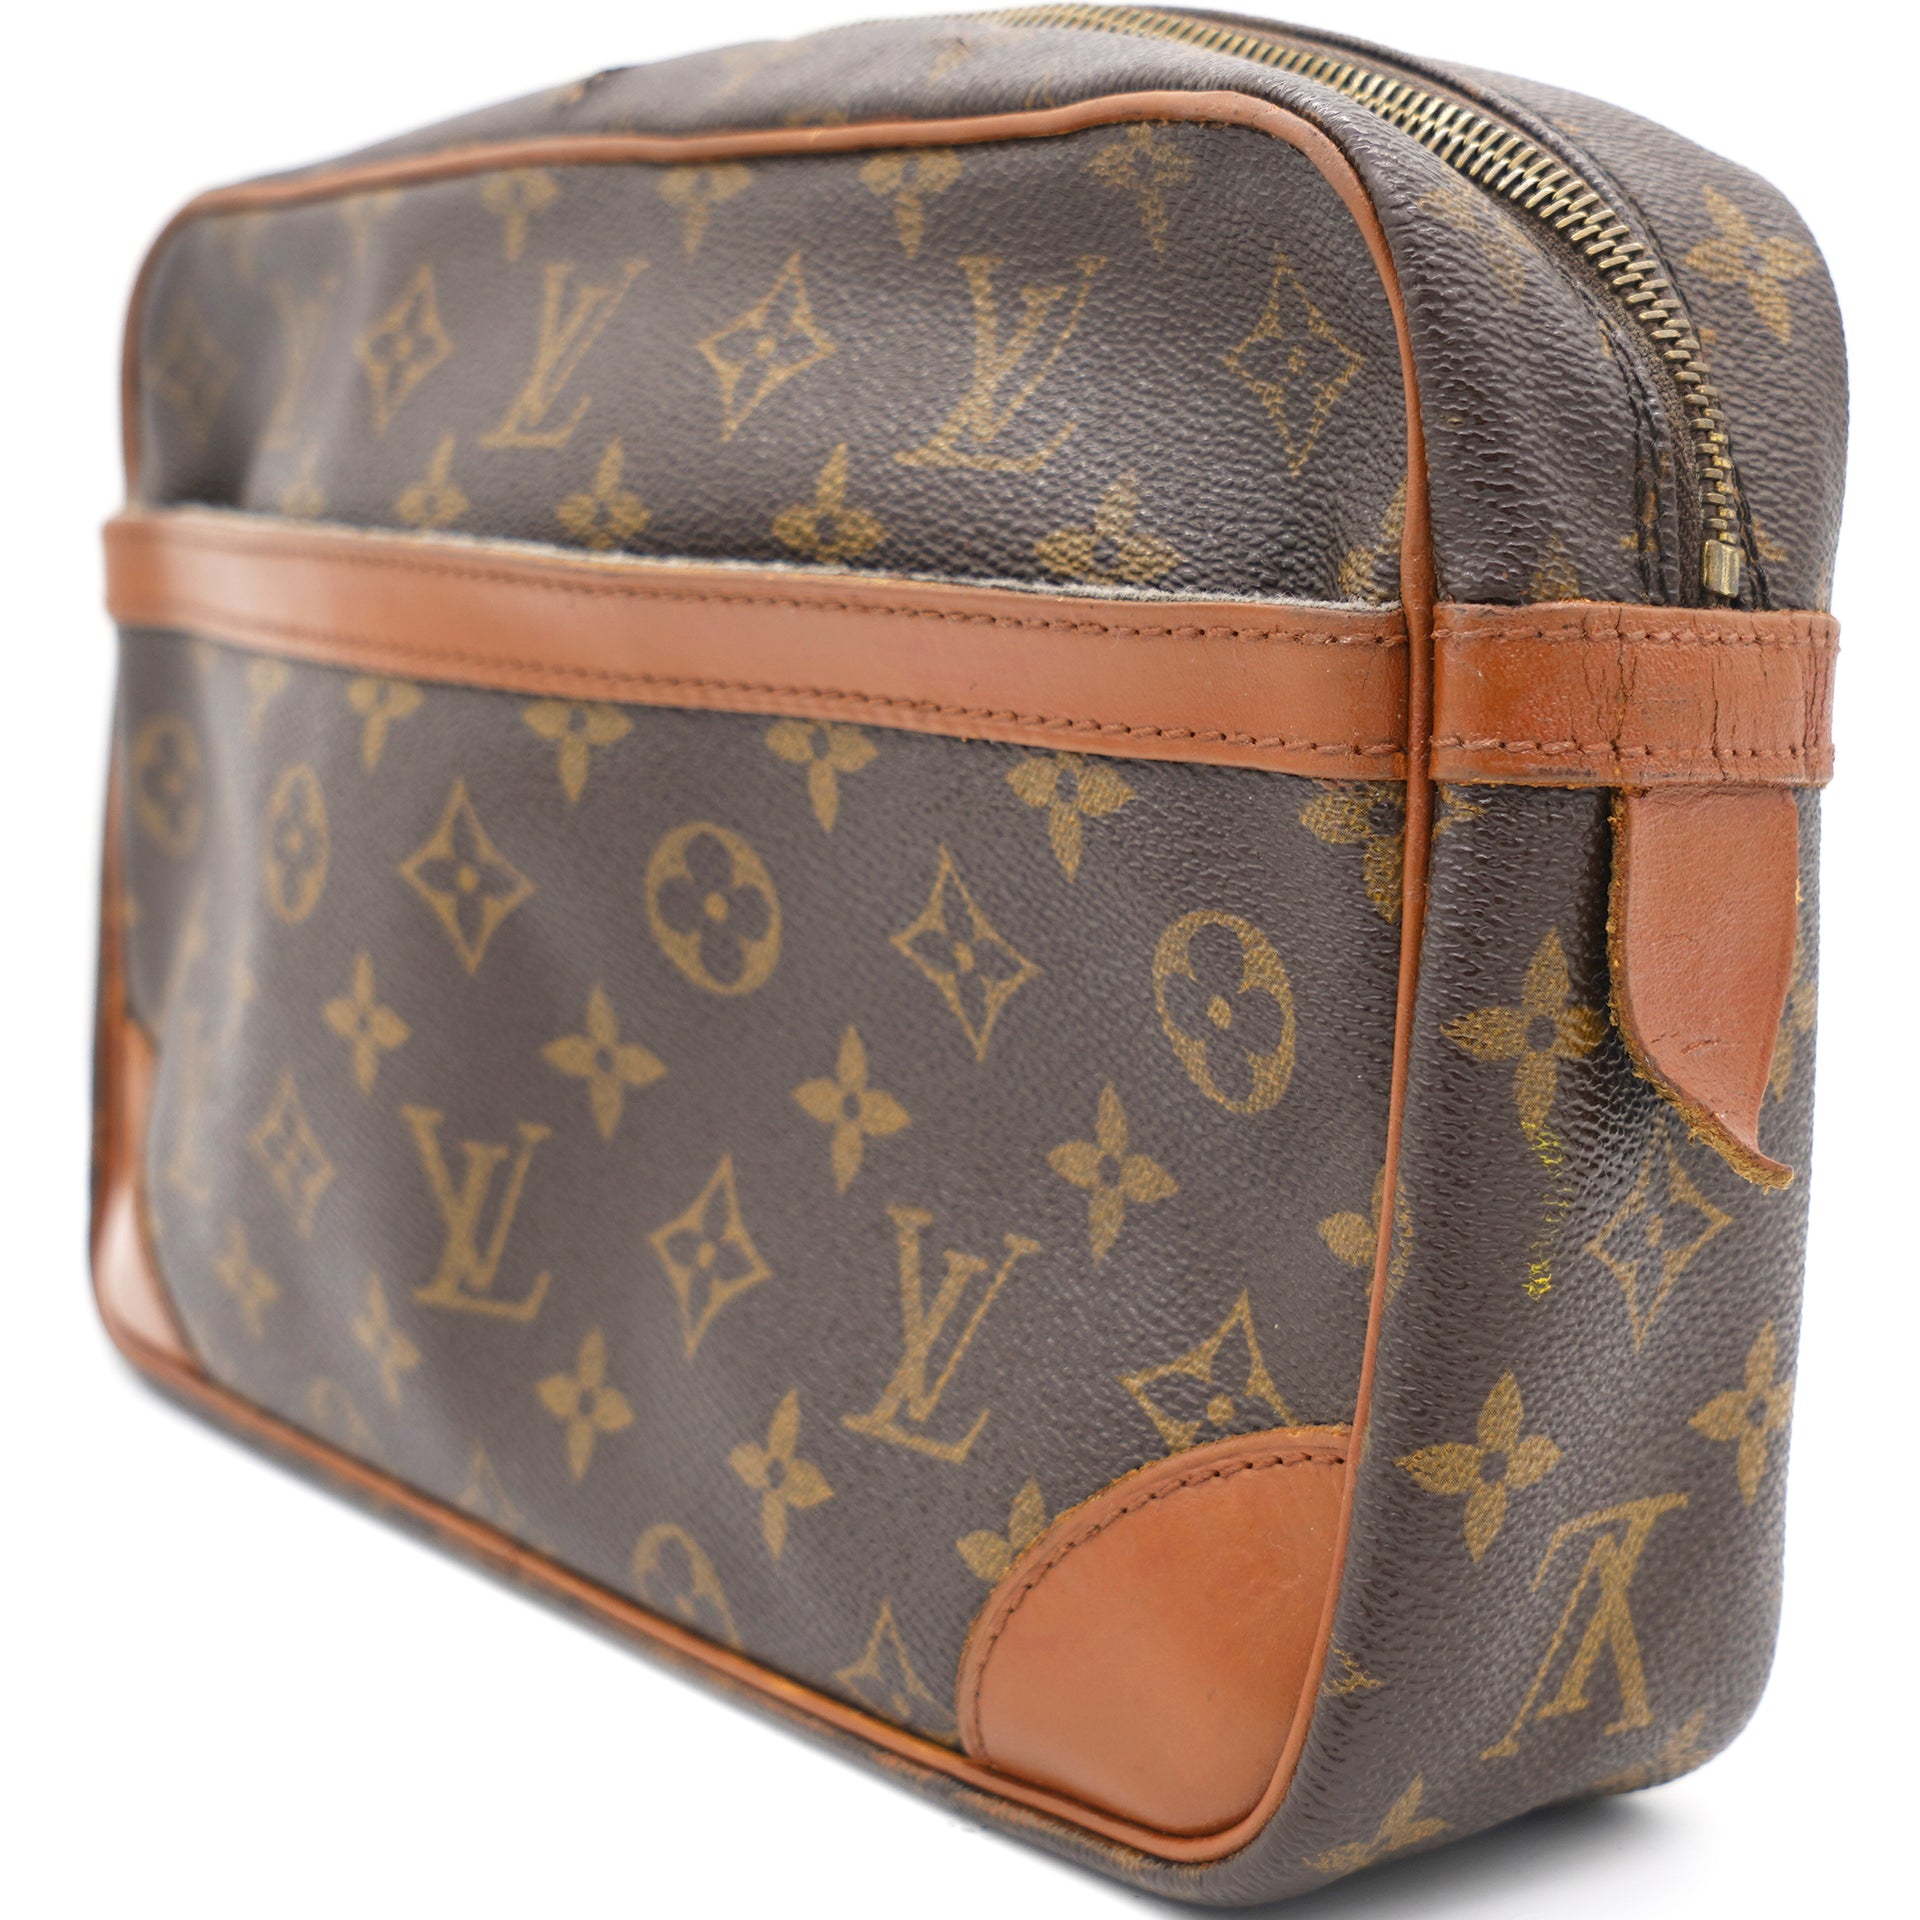 Louis Vuitton, Bags, Authentic Louis Vuitton Monogram Compiegne 28 Clutch